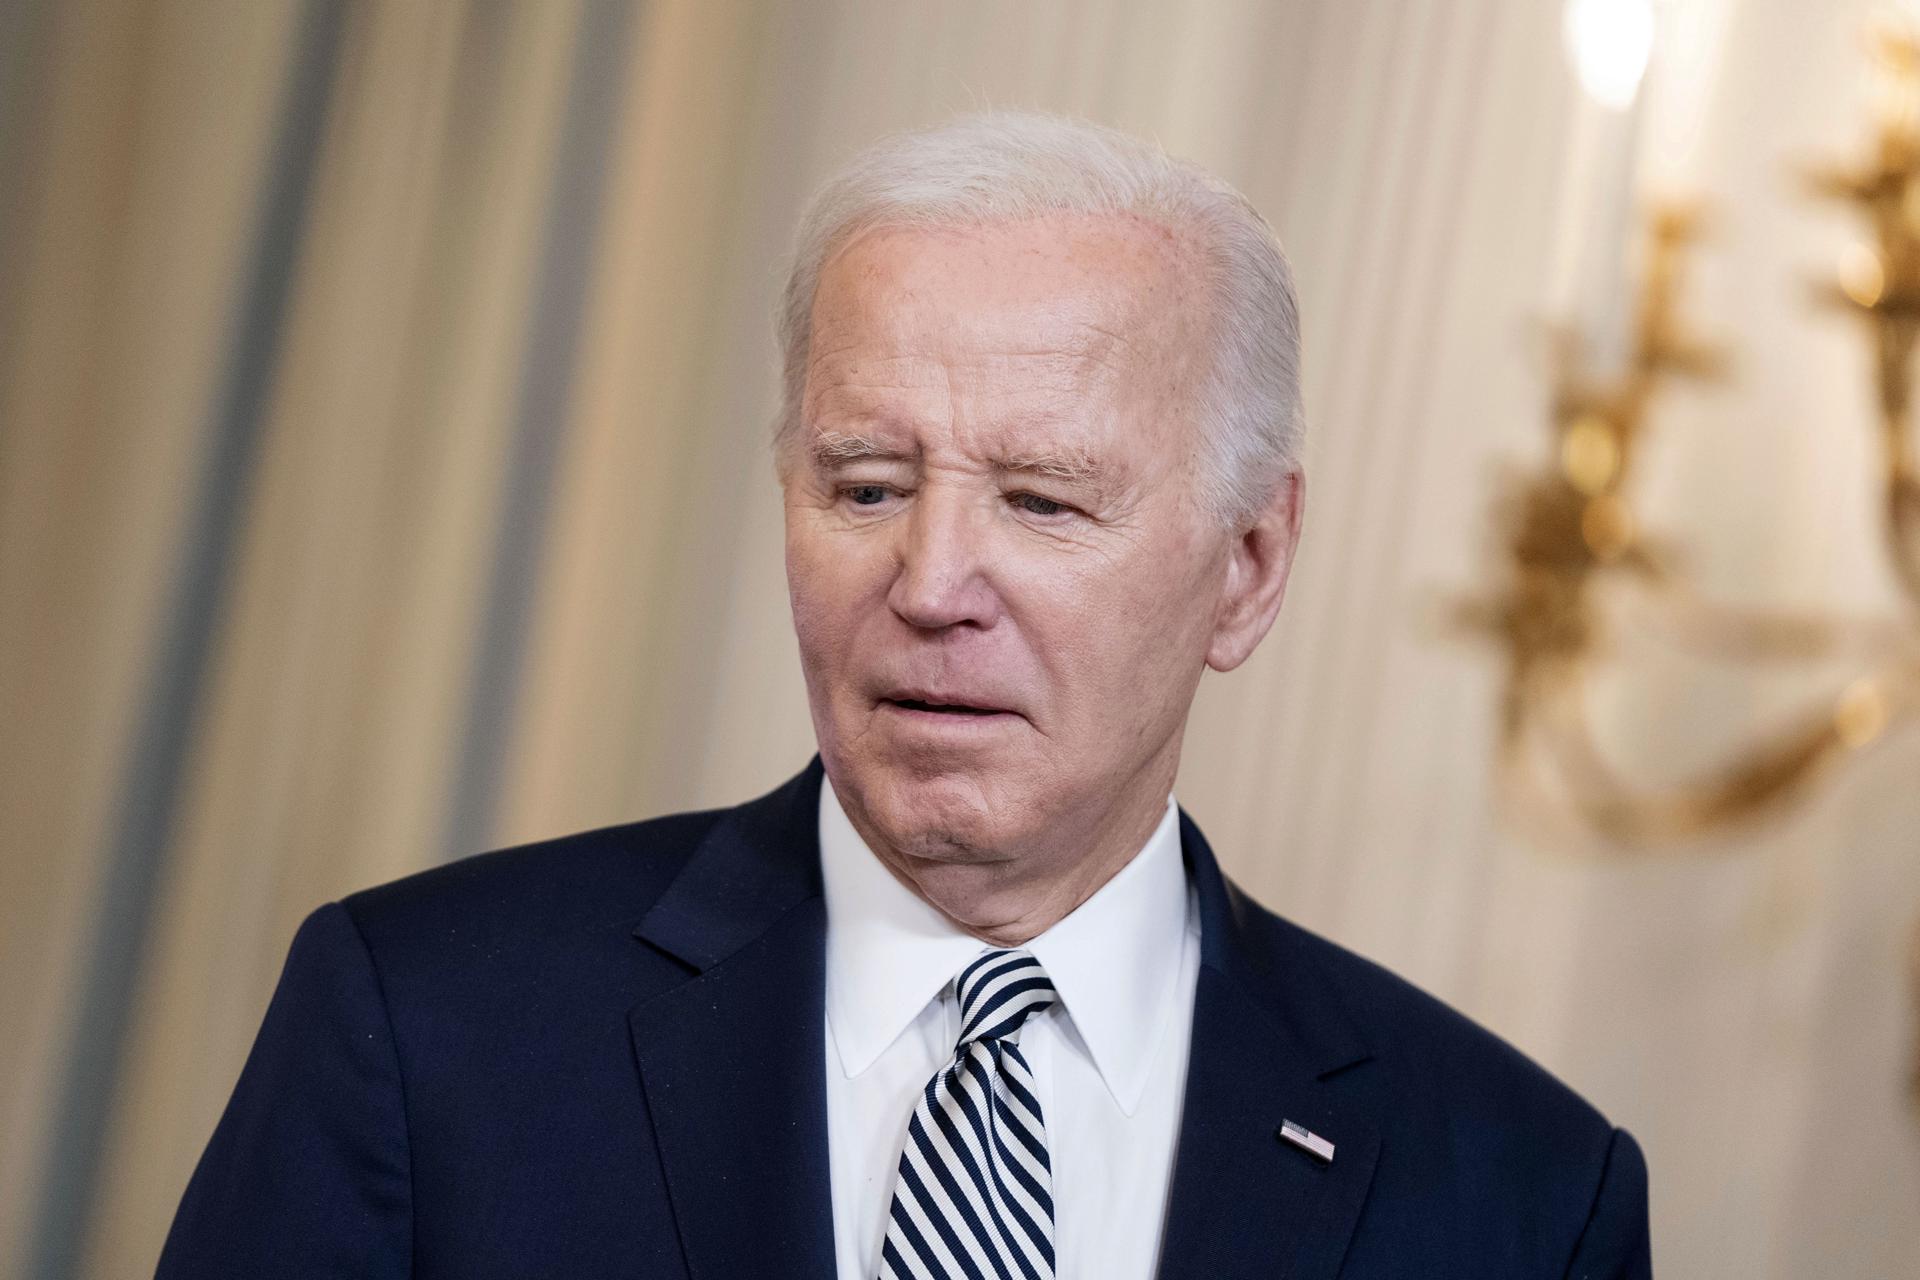 Biden negó haber filtrado información secreta y defendió su capacidad mental… luego sufrió otro “lapsus”